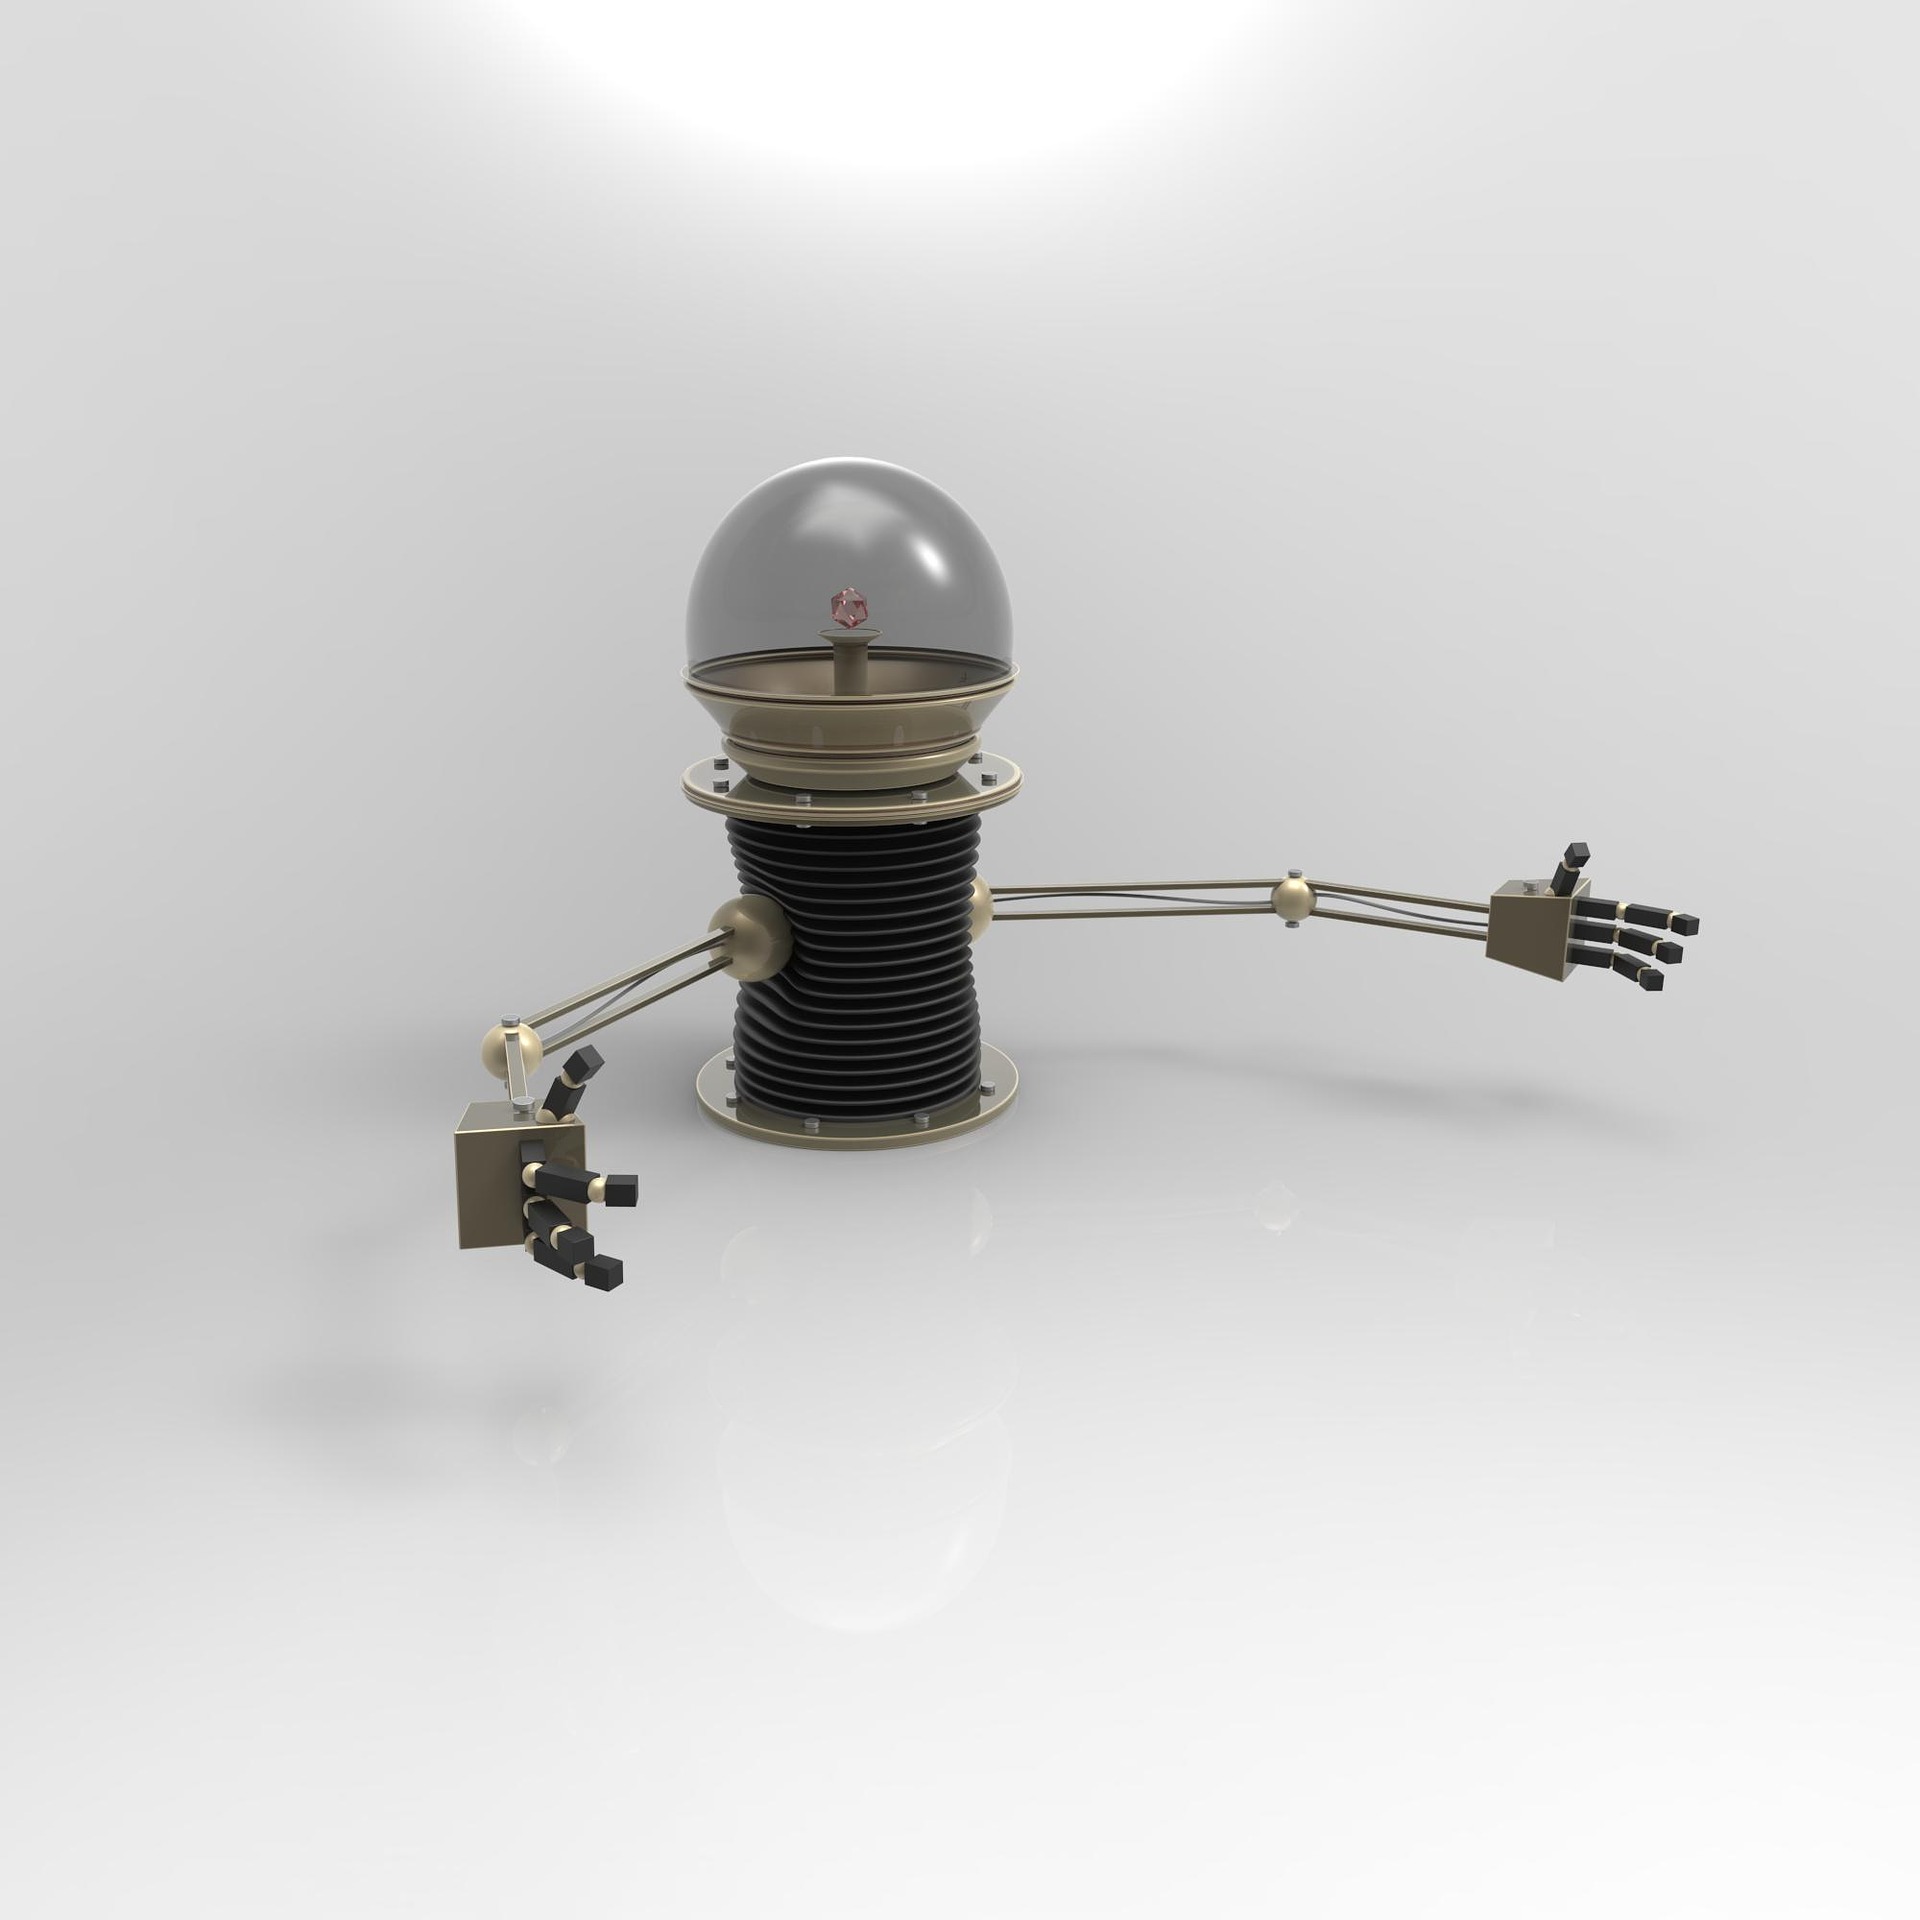 Illustration représentant un petit robot avec une ampoule pour tête et des petits bras.